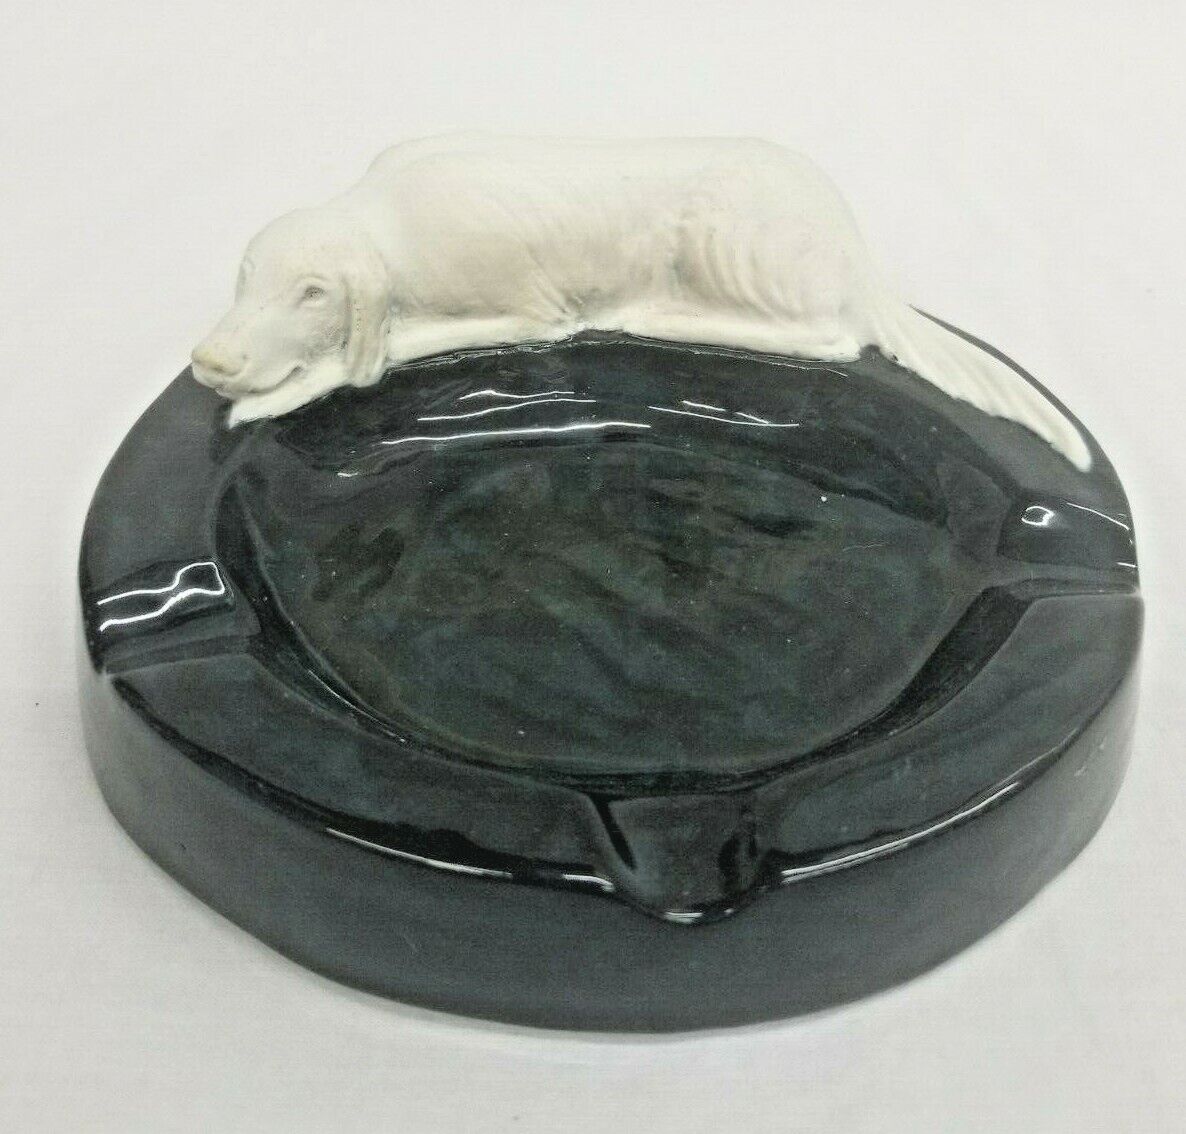 Jasperware Seymour Jones 1961 Art Porcelain Ashtray White English Setter Dog